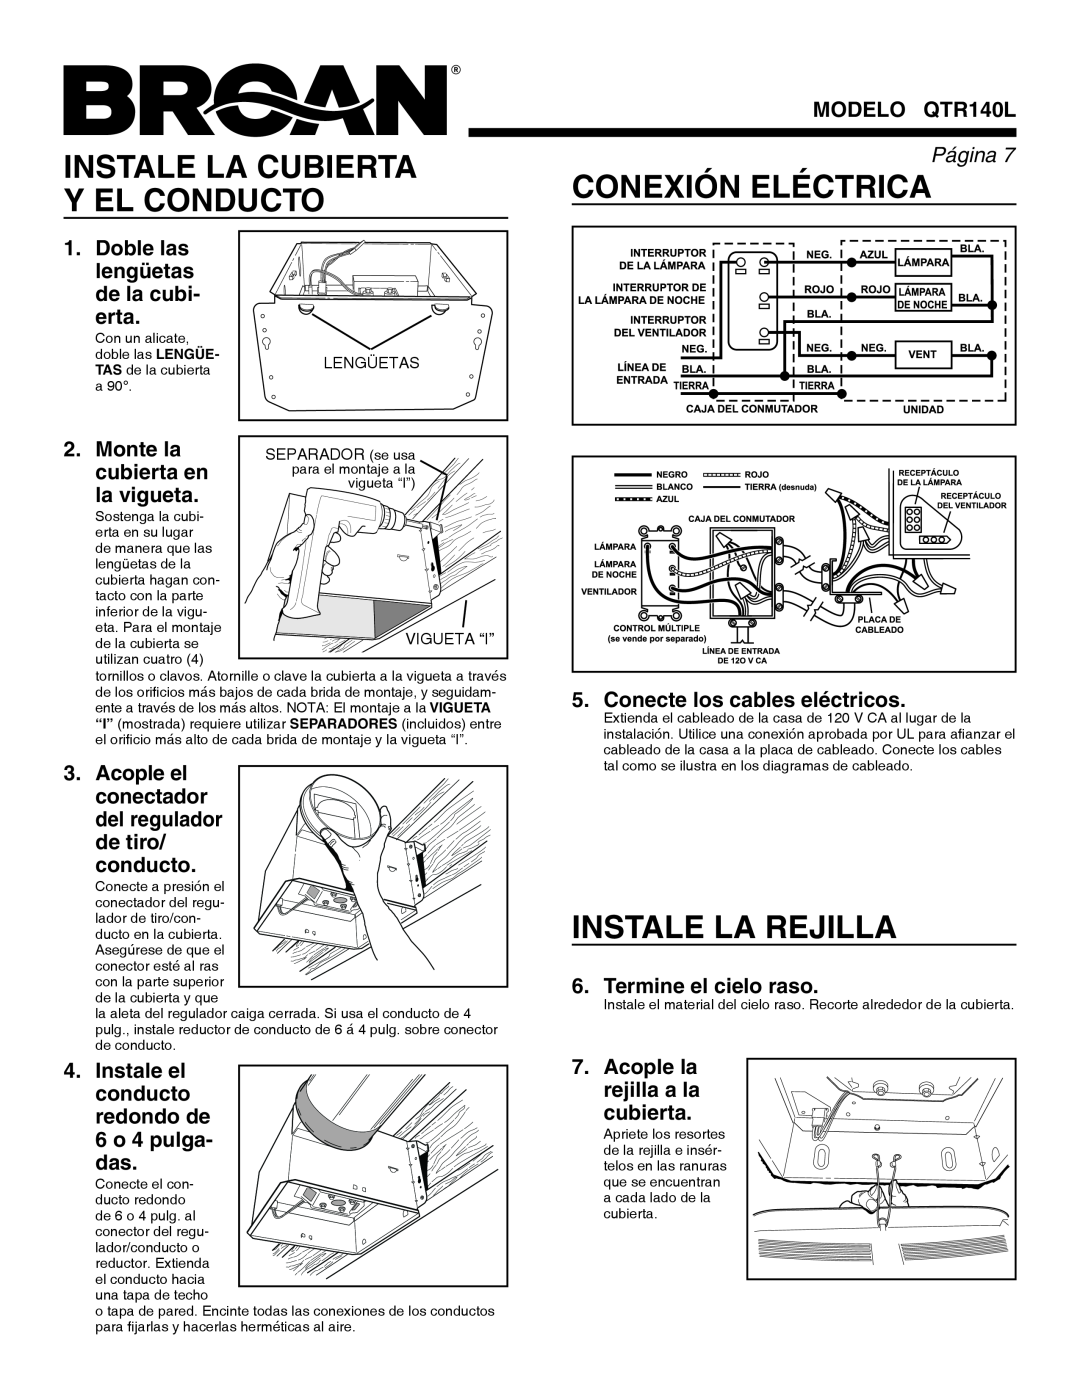 Broan QTR140L warranty Instale La Cubierta, Conexión Eléctrica, Y El Conducto, Instale La Rejilla 